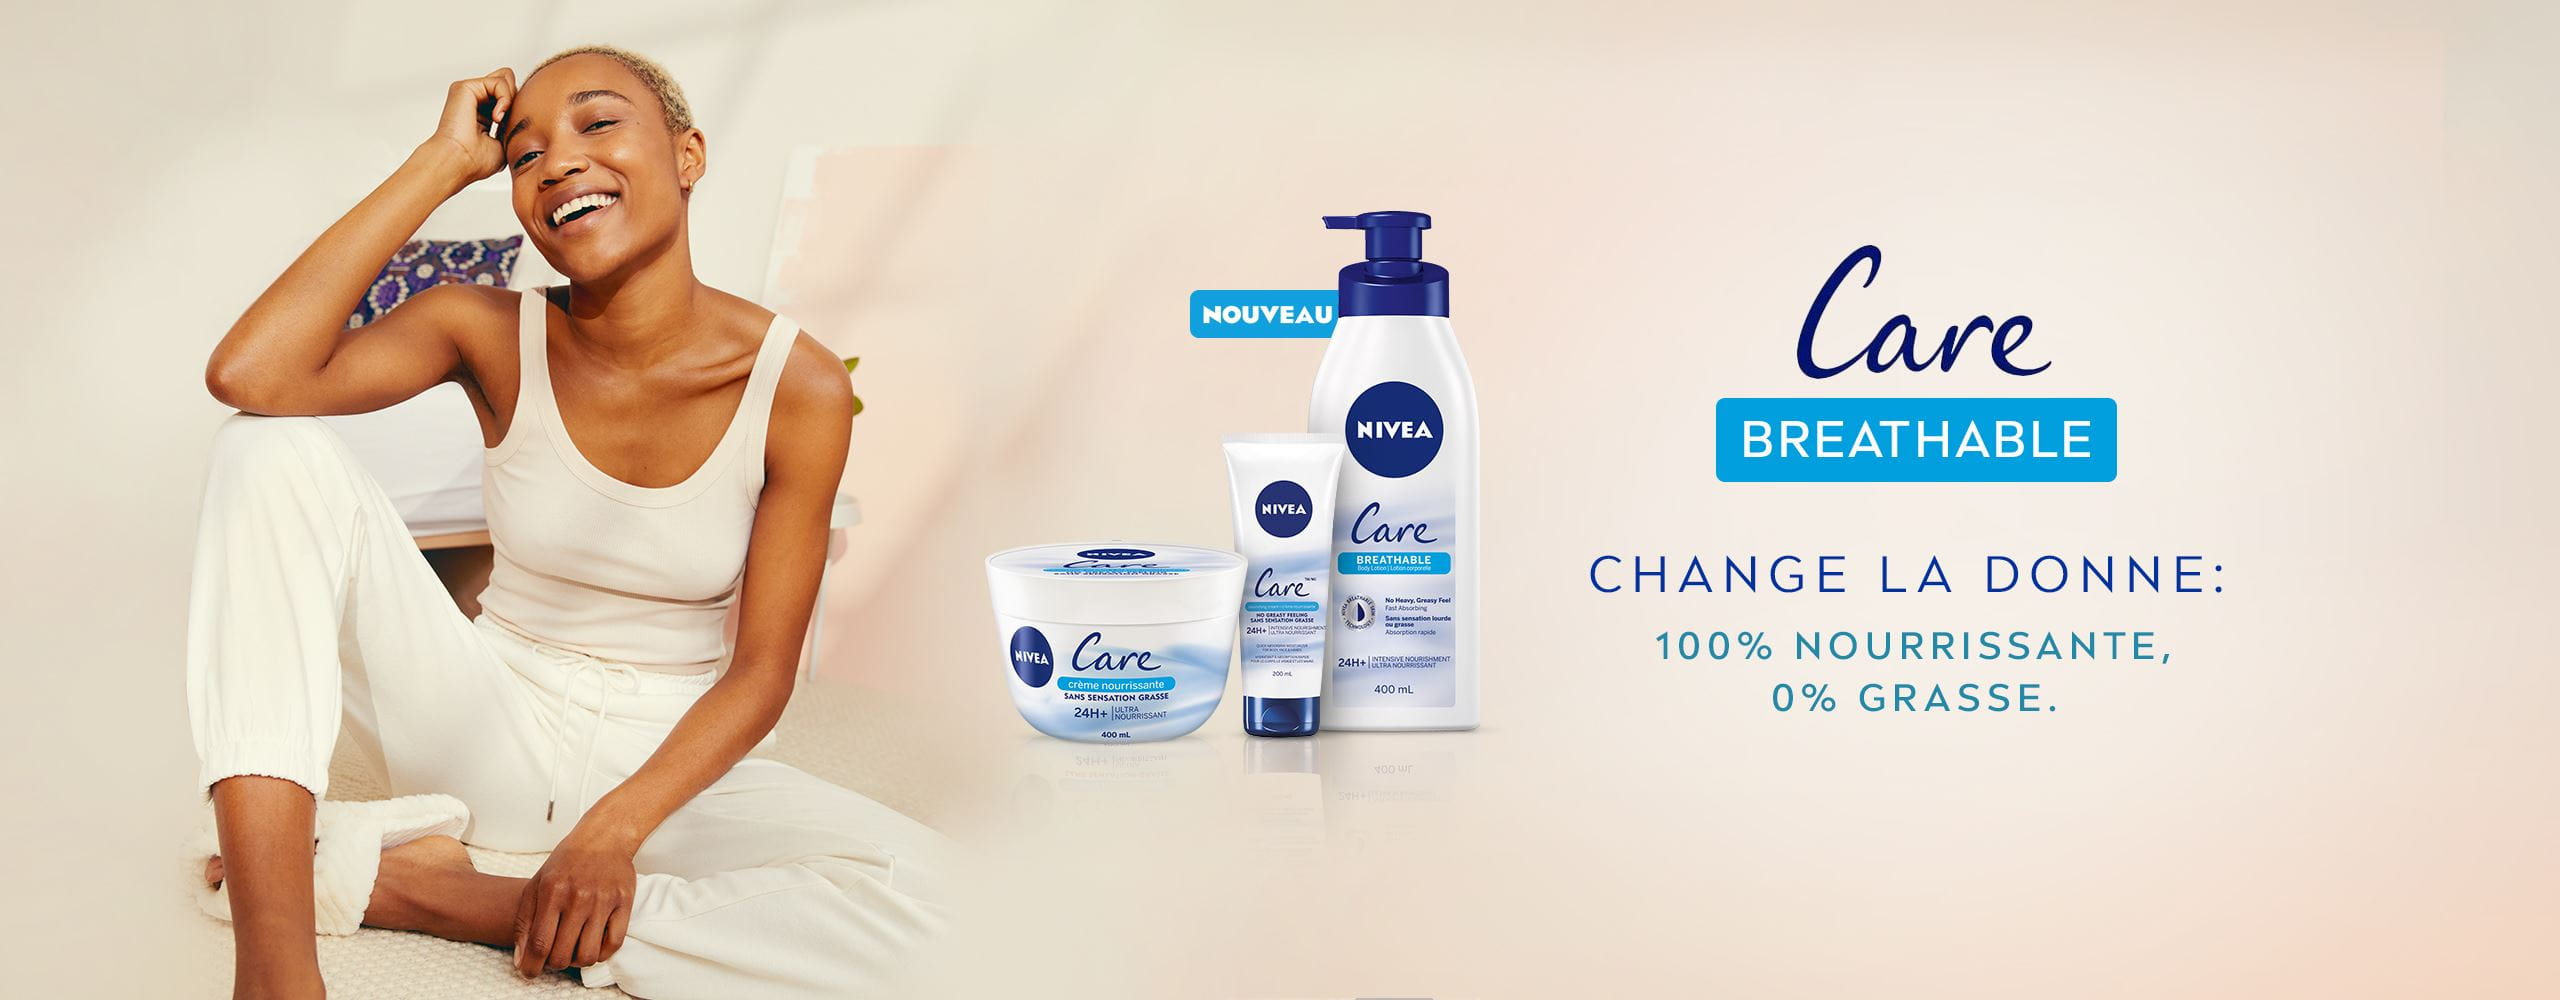 Vue de trois produits Nivea Care Breathable avec texte descriptif et modèle appuyé contre un oreiller bleu sur fond crème.